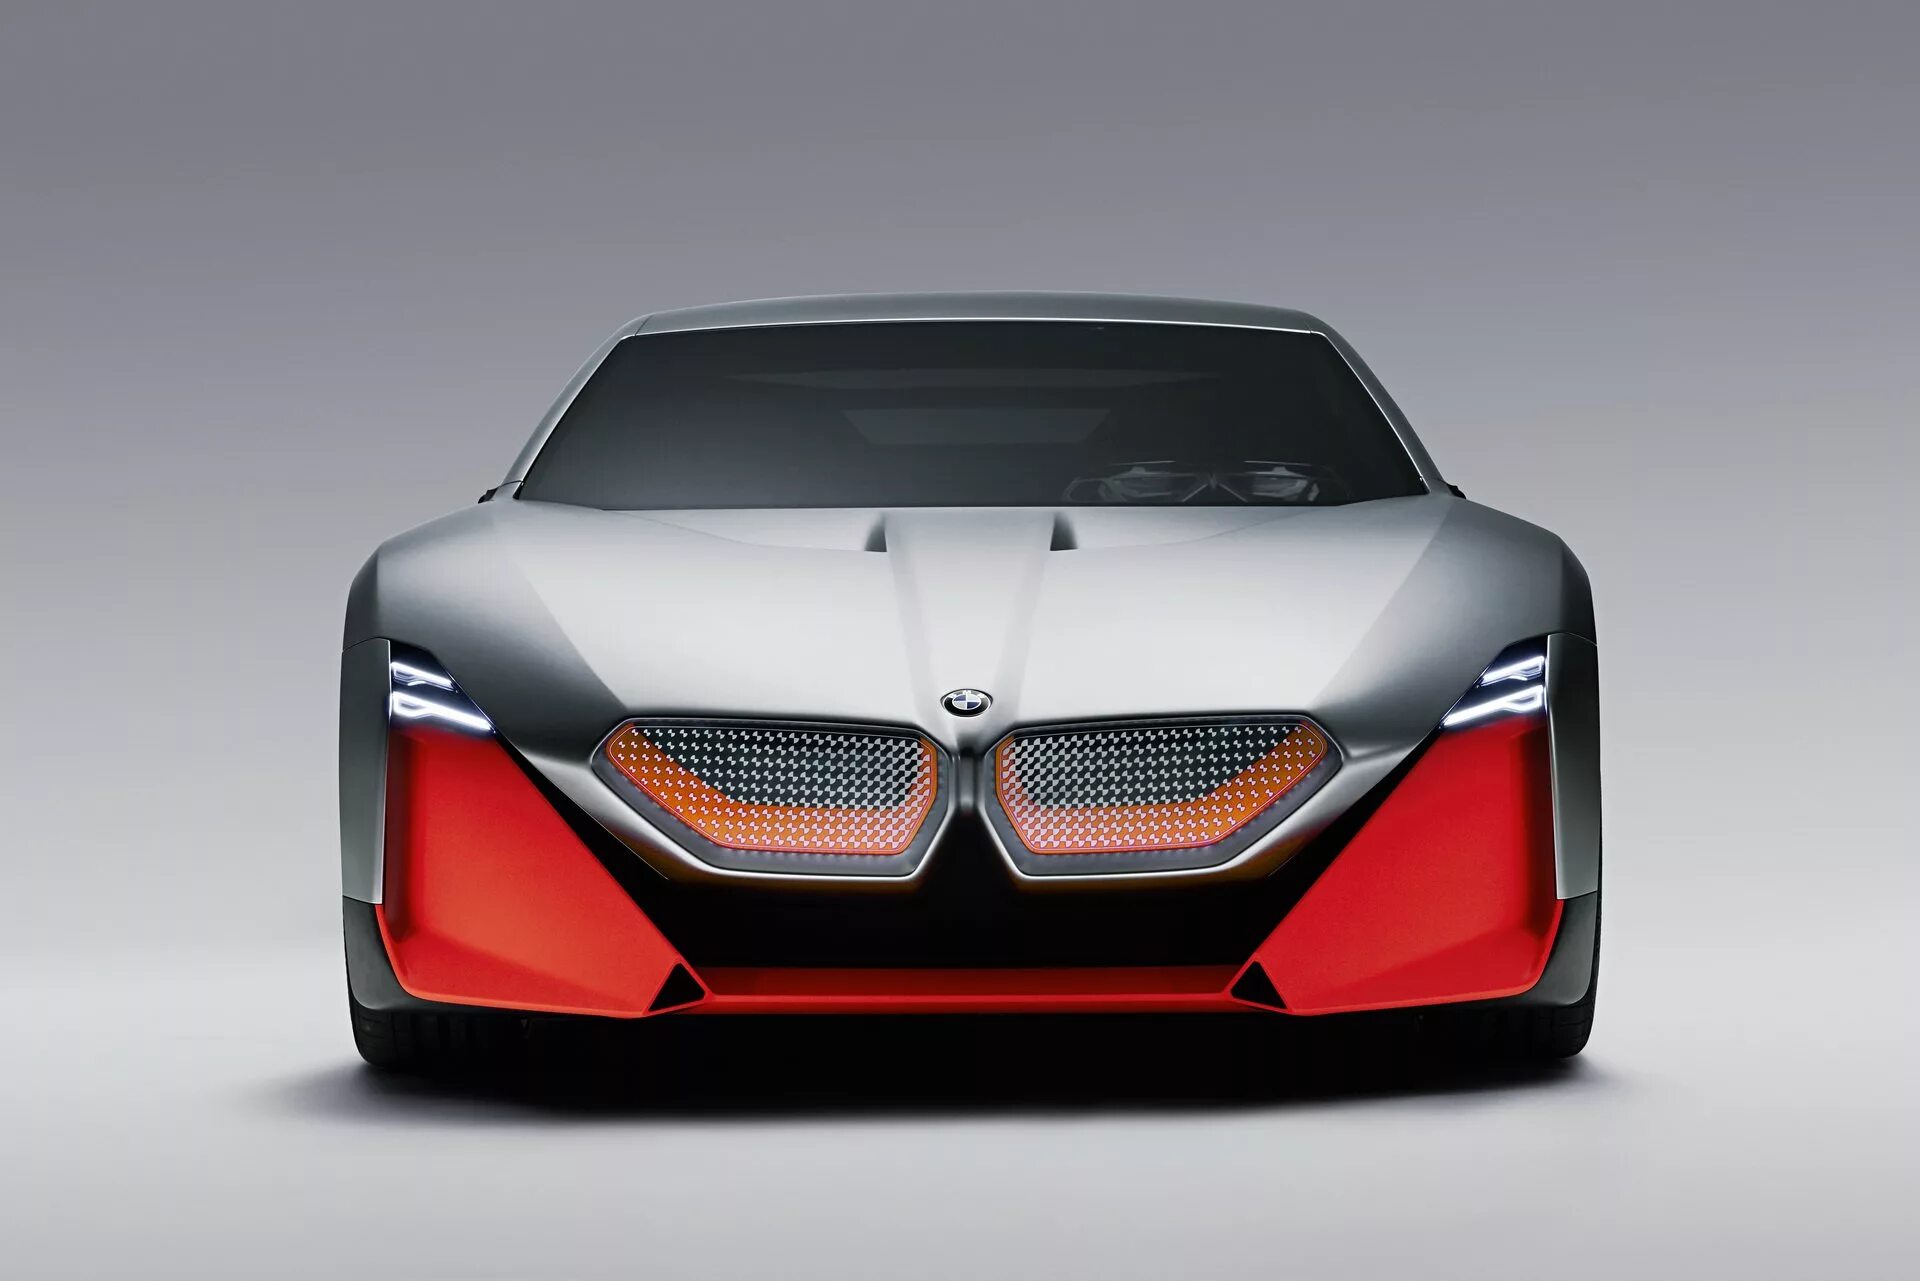 M concept sport. BMW Vision m. BMW Vision m next. BMW Vision m next 2020. BMW m1 Concept 2020.